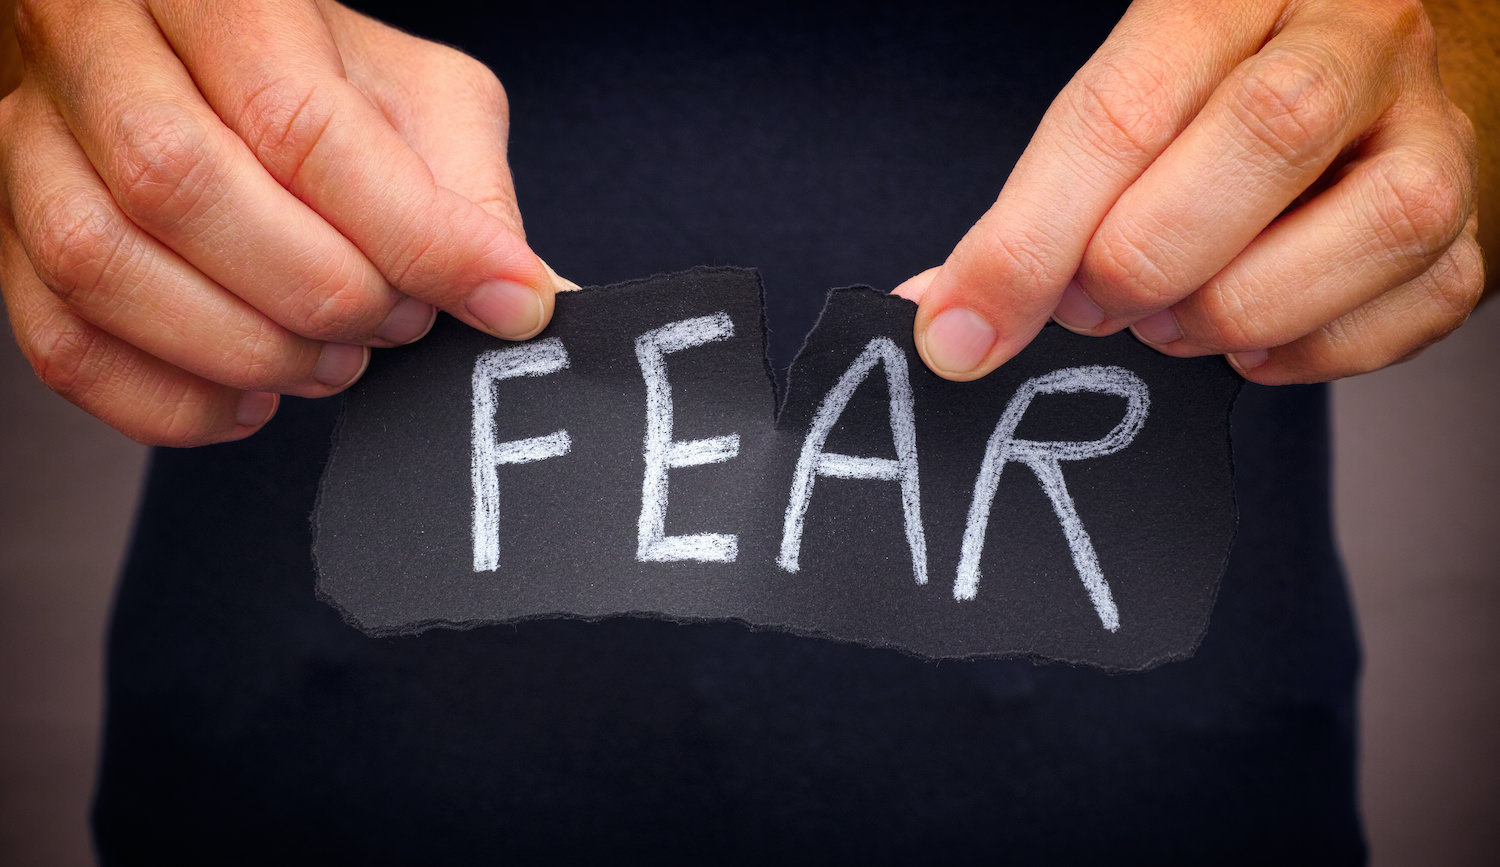 Don't let fear paralyze you